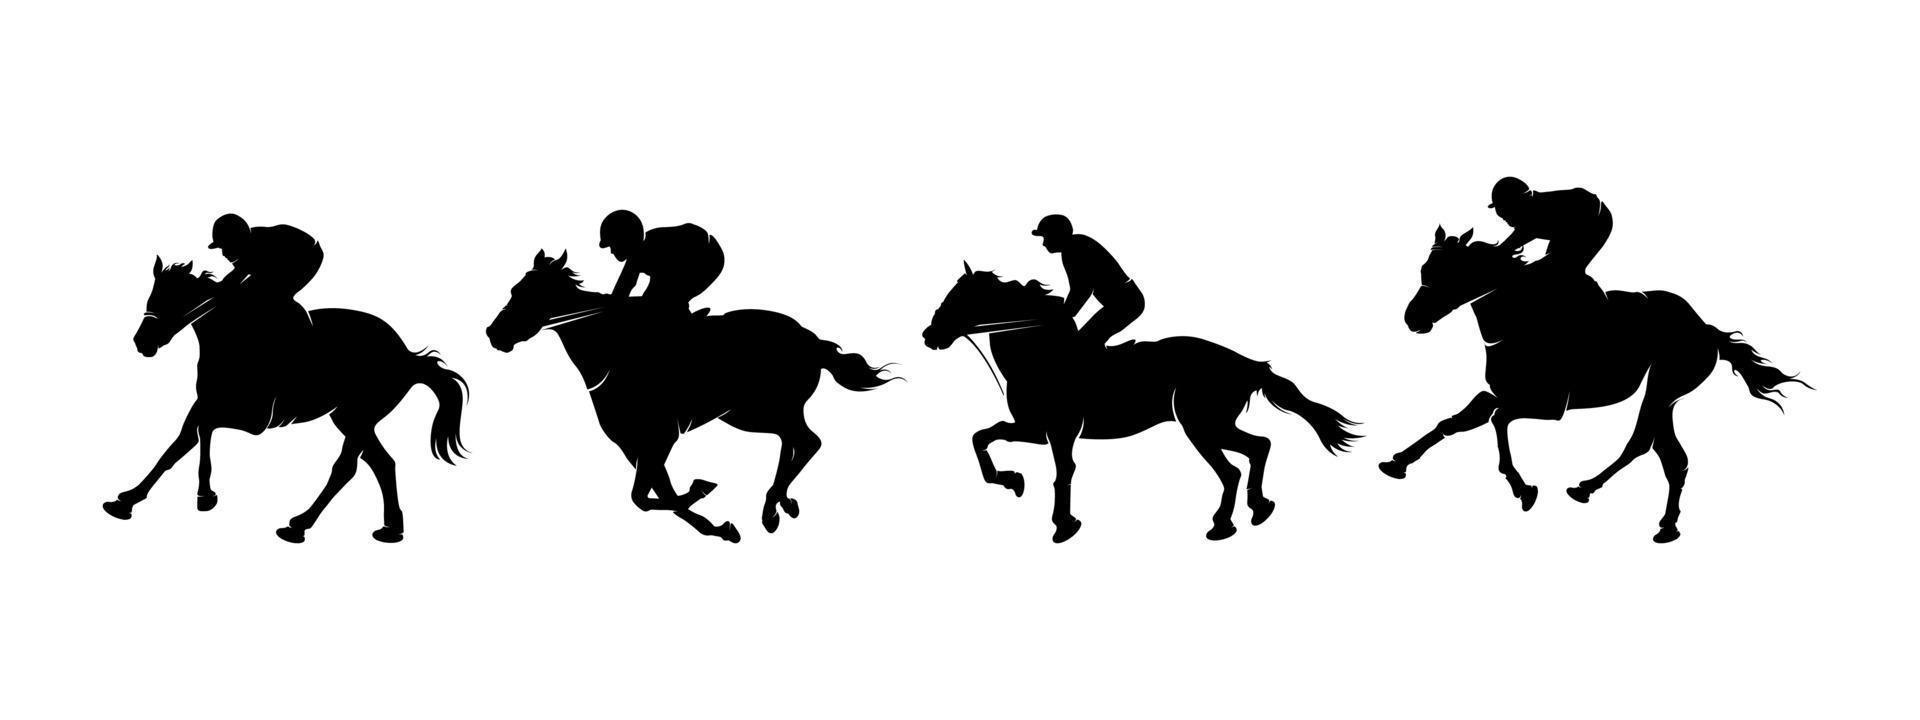 corrida de cavalos de silhueta de coleção vetor